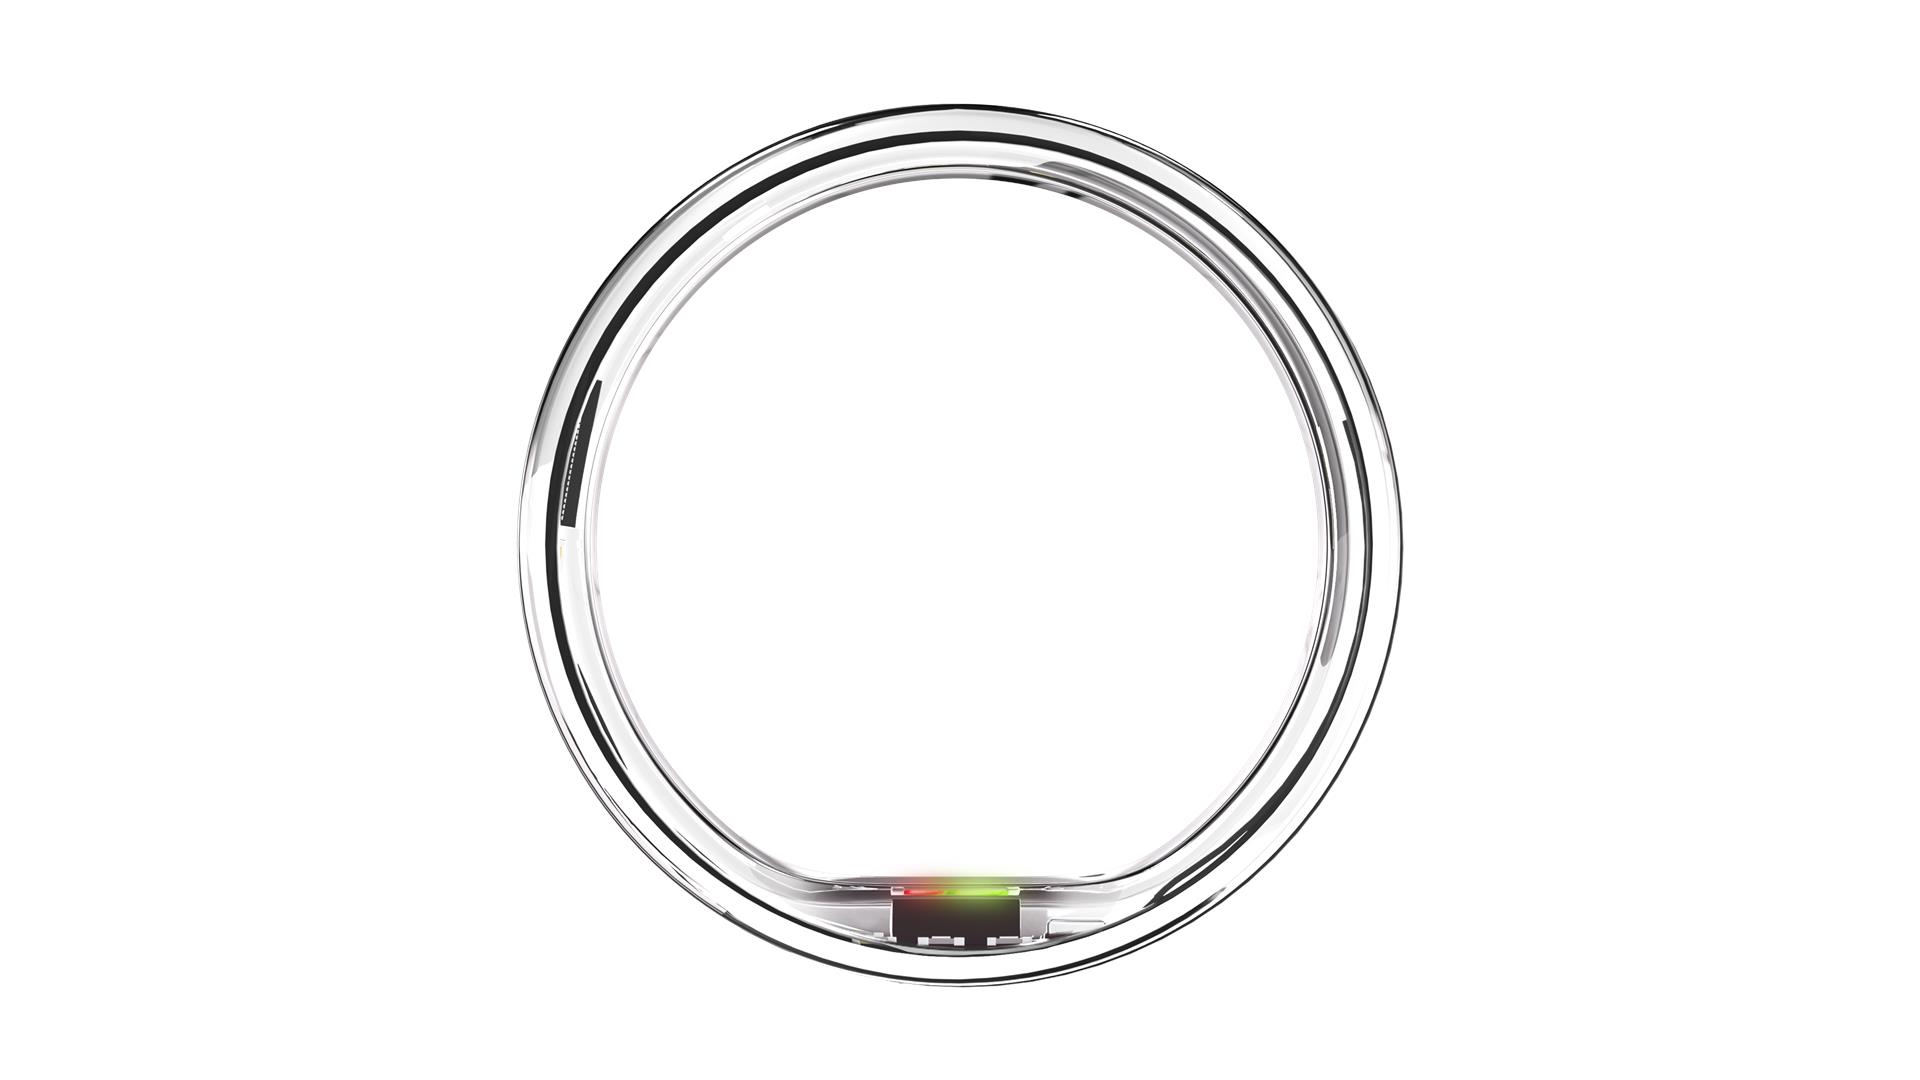 Ultrahuman Air ring, Silver, 08